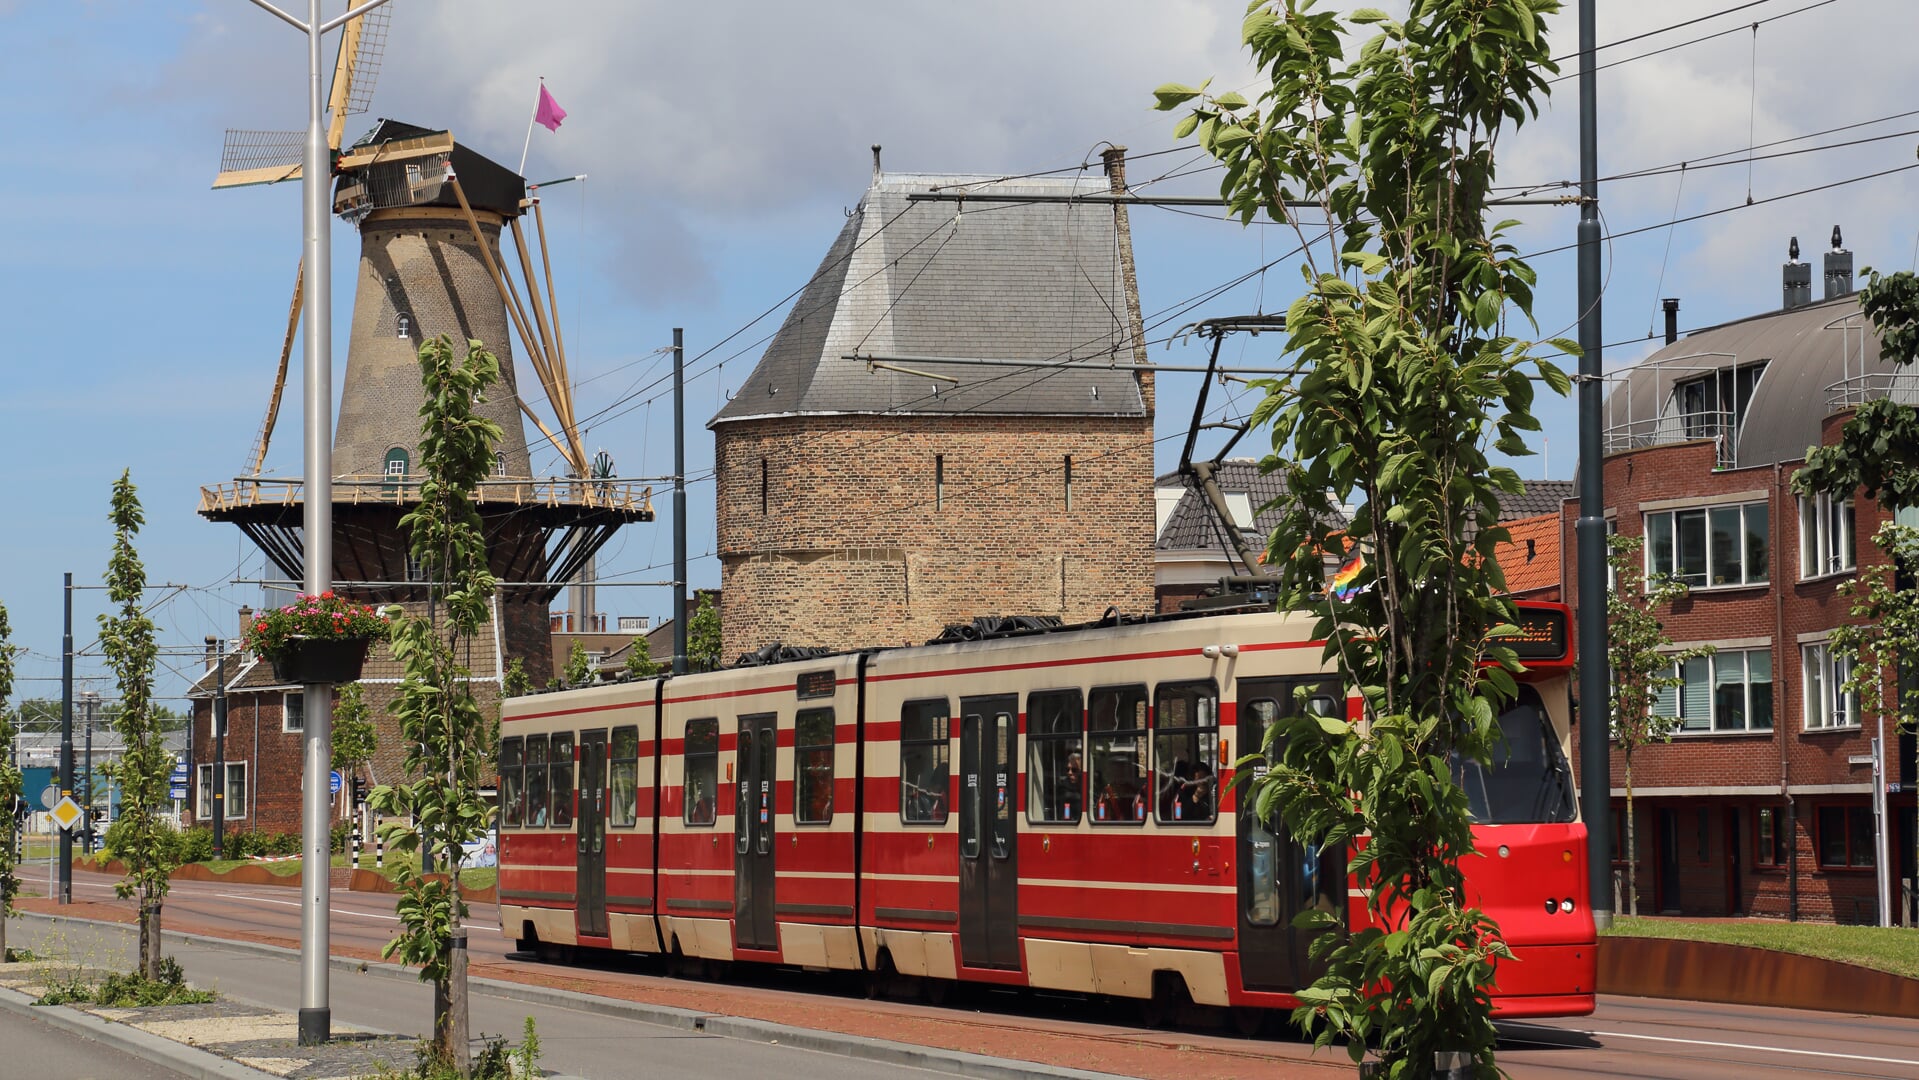 De tram zal door werkzaamheden tijdelijk niet naar Delft kunnen rijden 